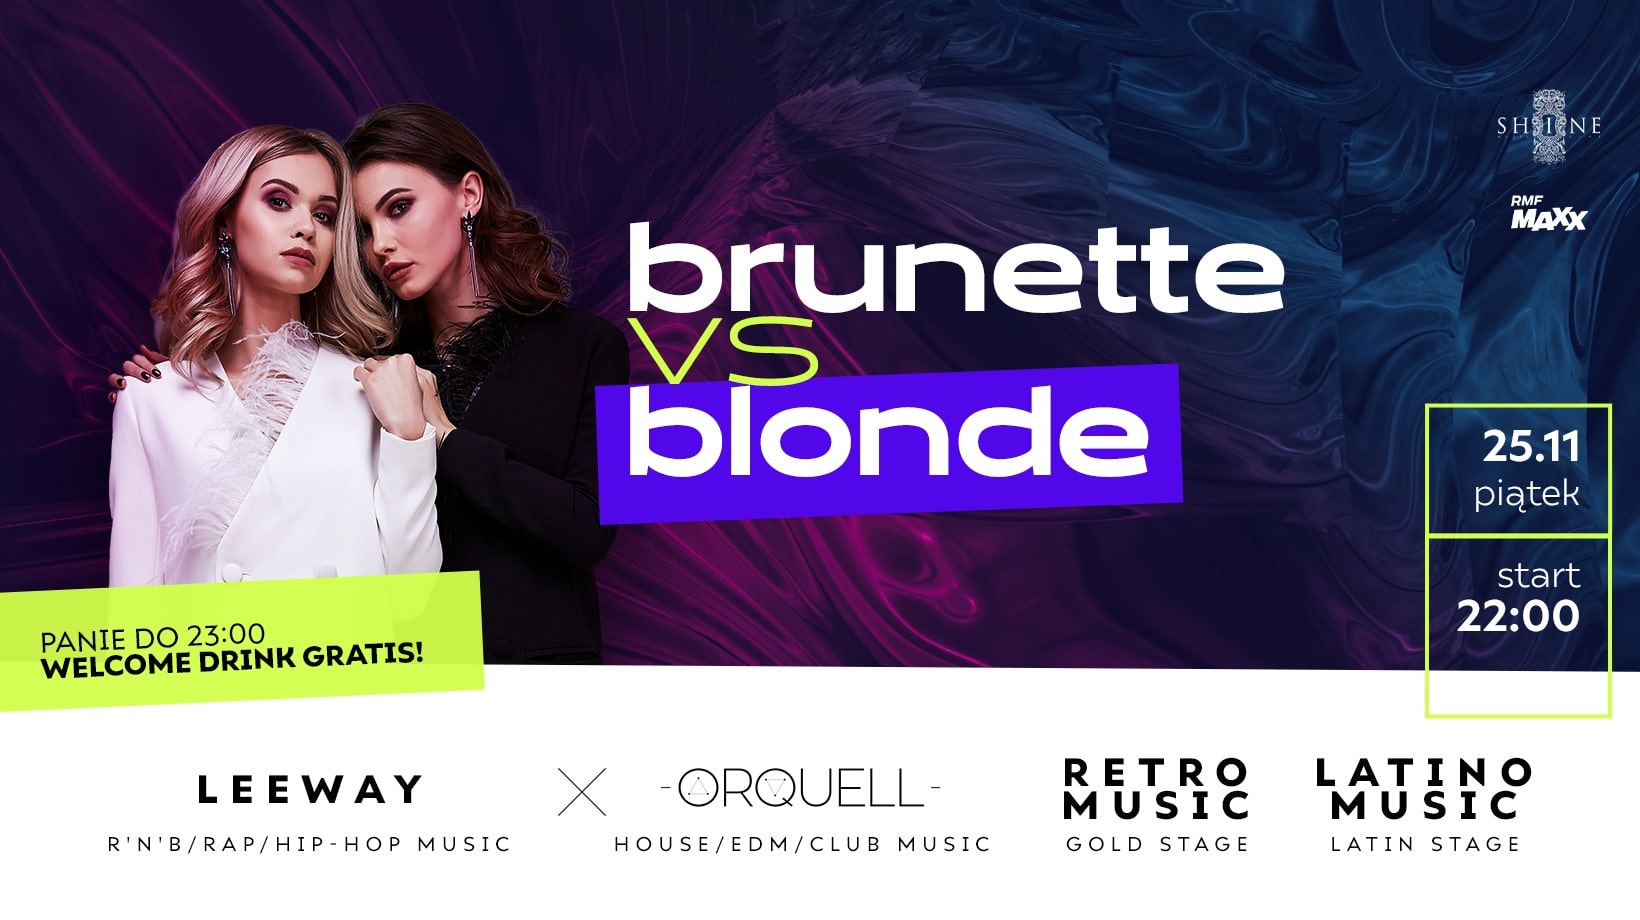 Brunette vs Blonde // Piątek 25.11 // Panie do 23:00 – Welcome Drink Gratis!